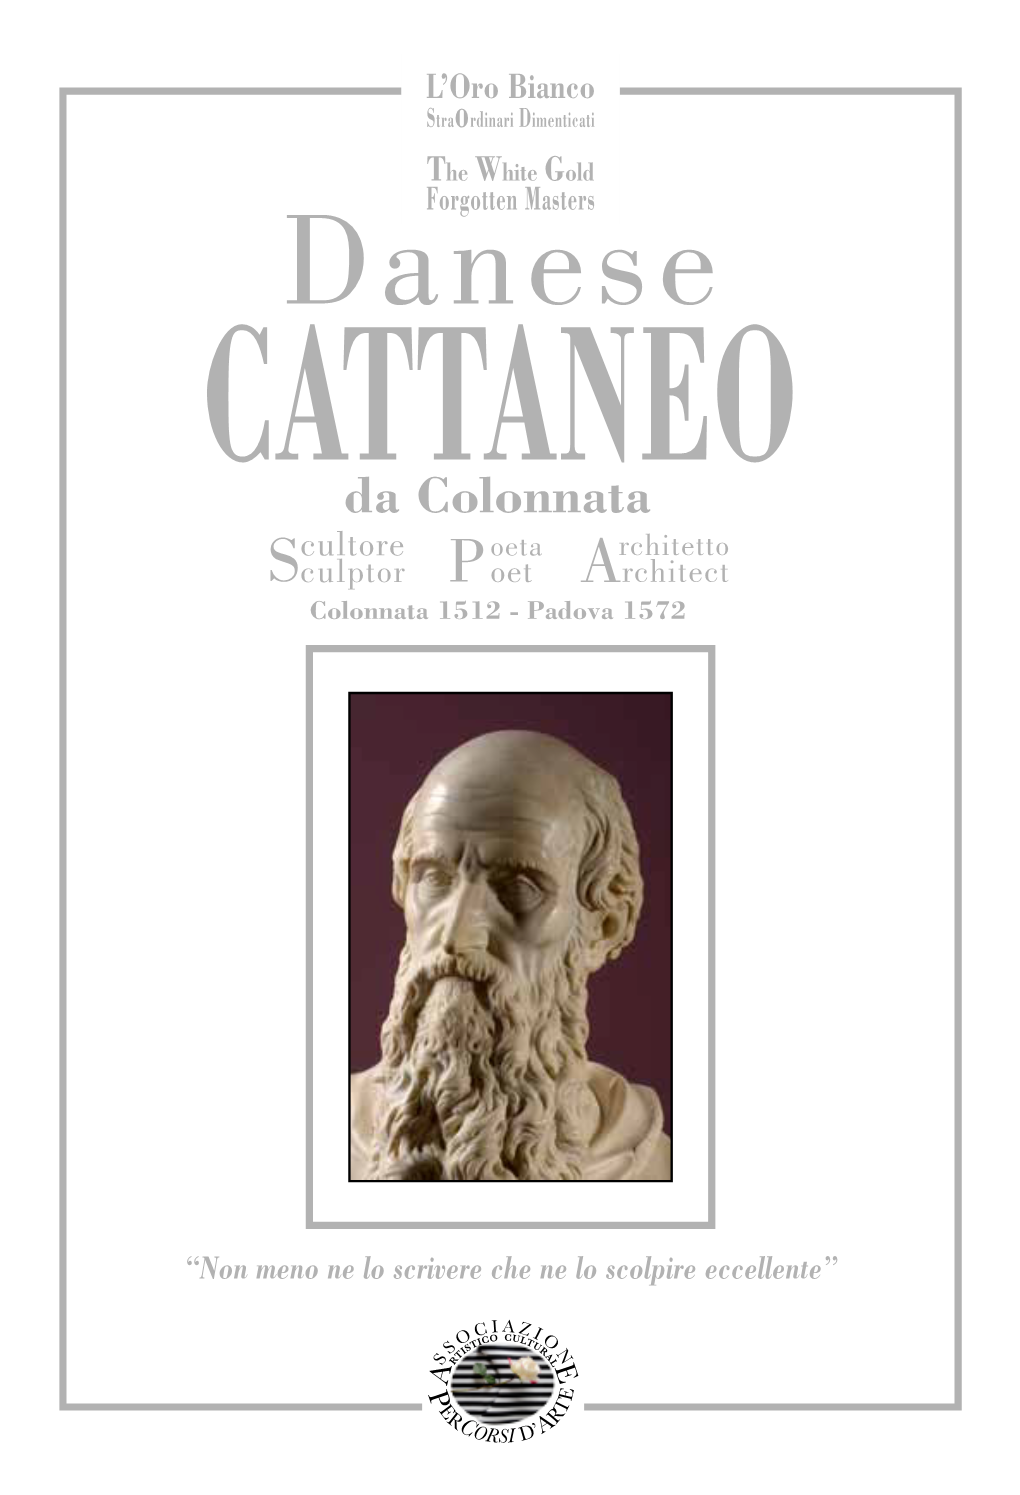 Danese Cattaneo Da Colonnata Cultore Oeta Rchitetto Sculptor P Oet Architect Colonnata 1512 - Padova 1572